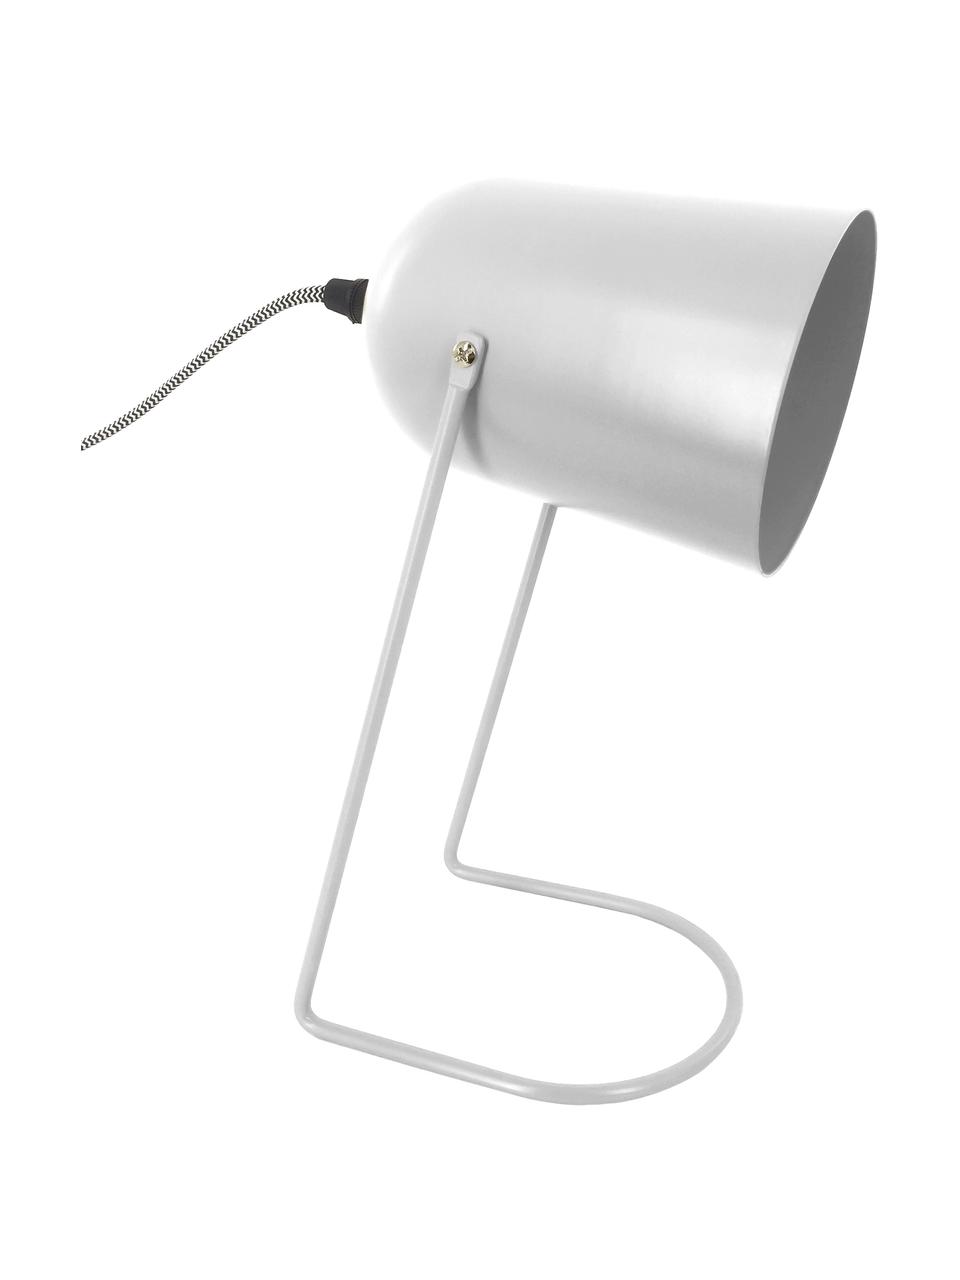 Kleine Retro-Tischlampe Enchant in Weiß, Lampenschirm: Metall, beschichtet, Lampenfuß: Metall, beschichtet, Gebrochenes Weiß, Ø 18 x H 30 cm